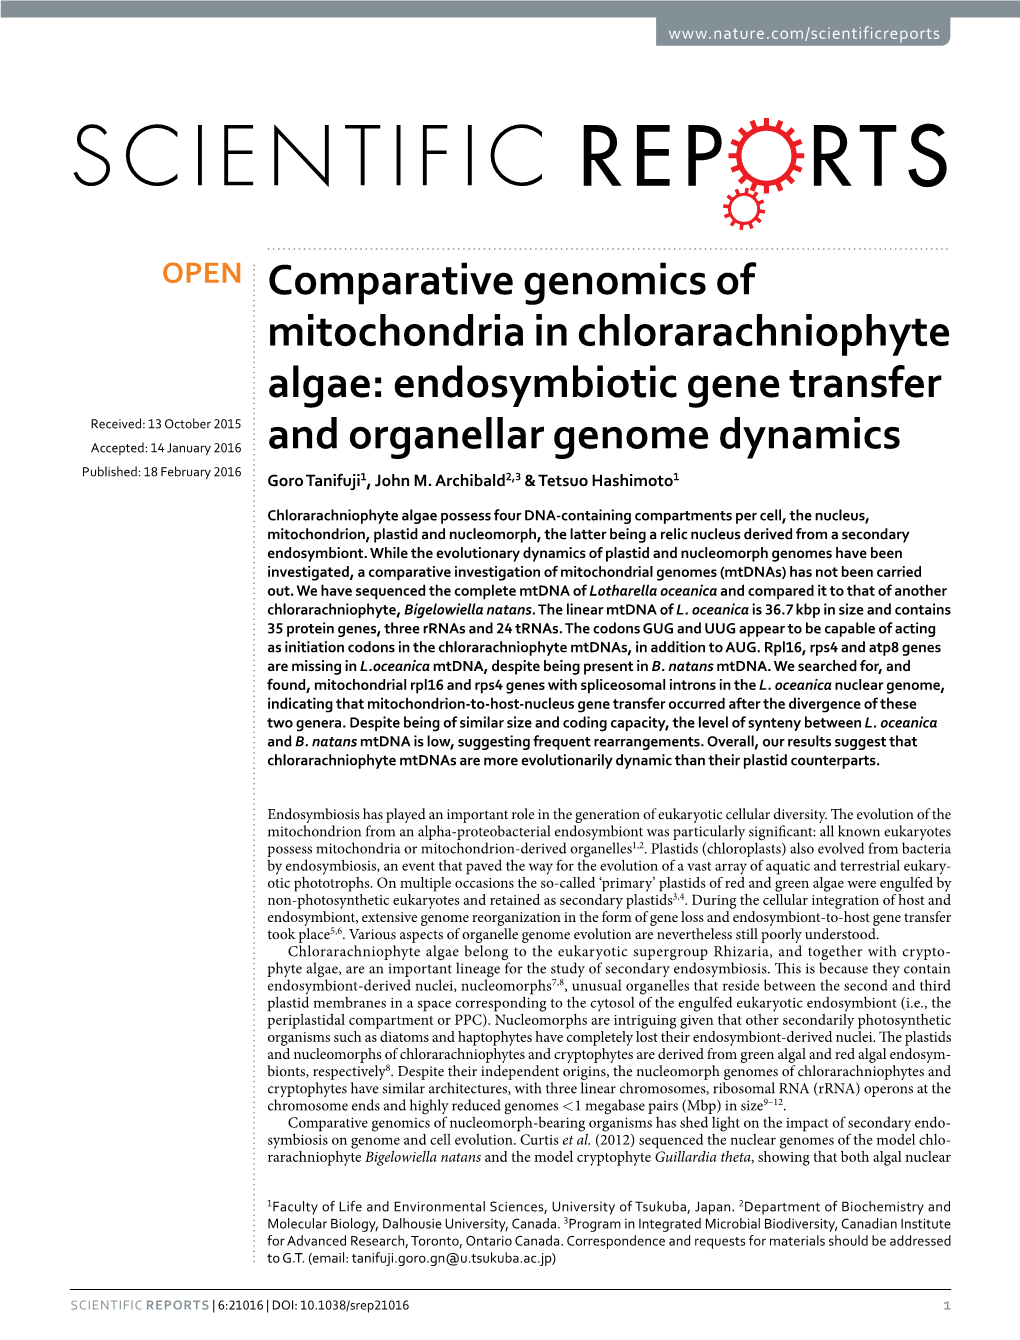 Comparative Genomics of Mitochondria in Chlorarachniophyte